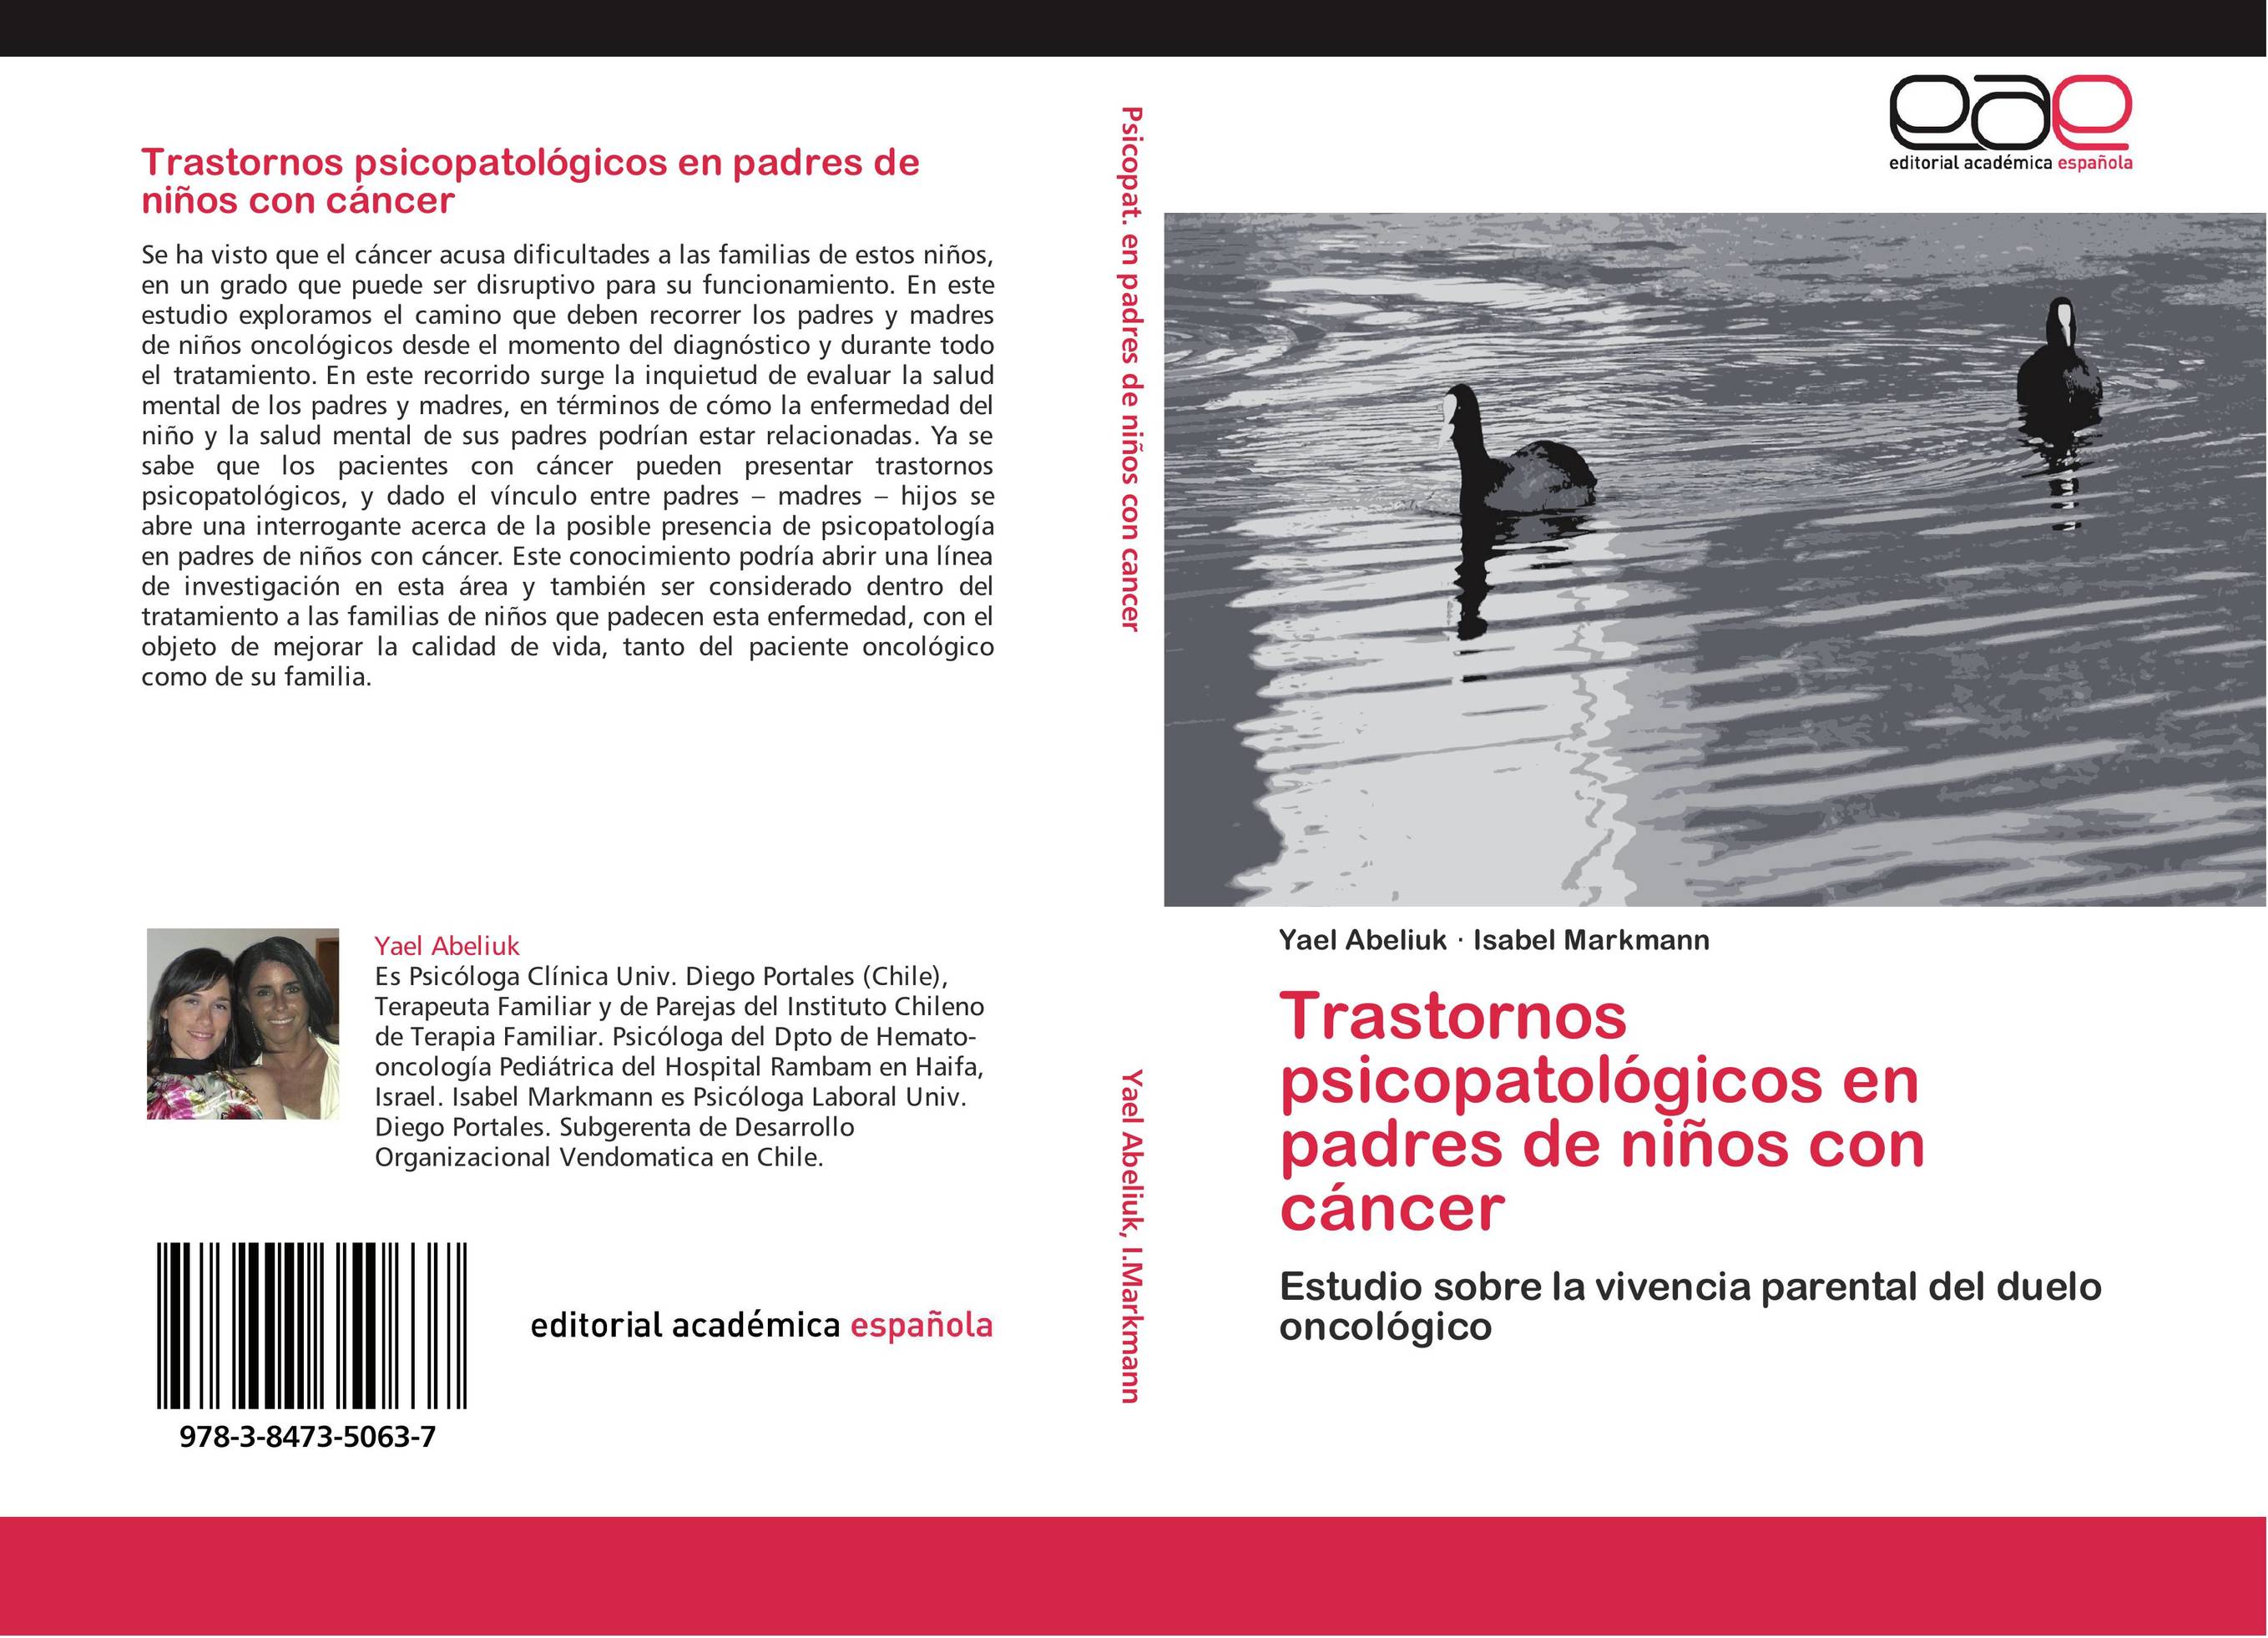 Trastornos psicopatológicos en padres niños con cáncer :: Librería Jerez